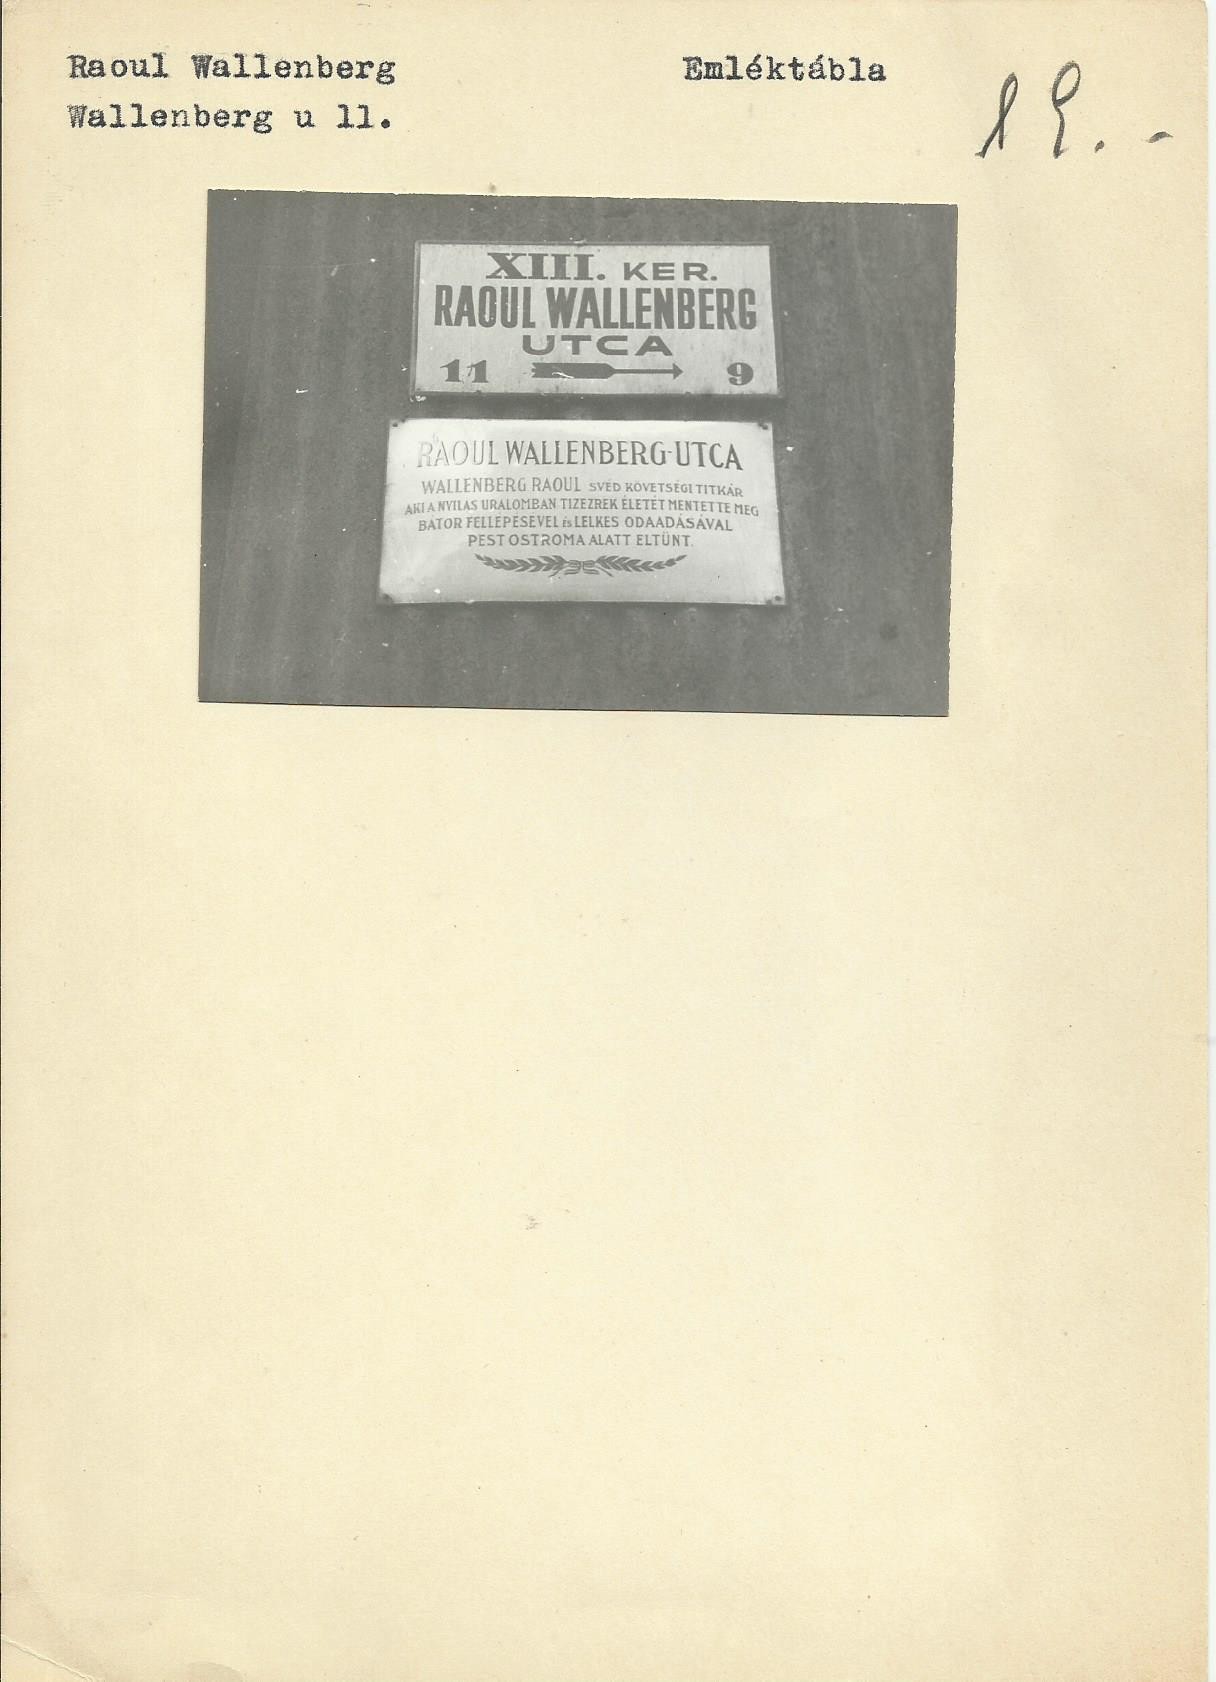 Raoul Wallenberg emléktábla (Angyalföldi Helytörténeti Gyűjtemény CC BY-NC-SA)